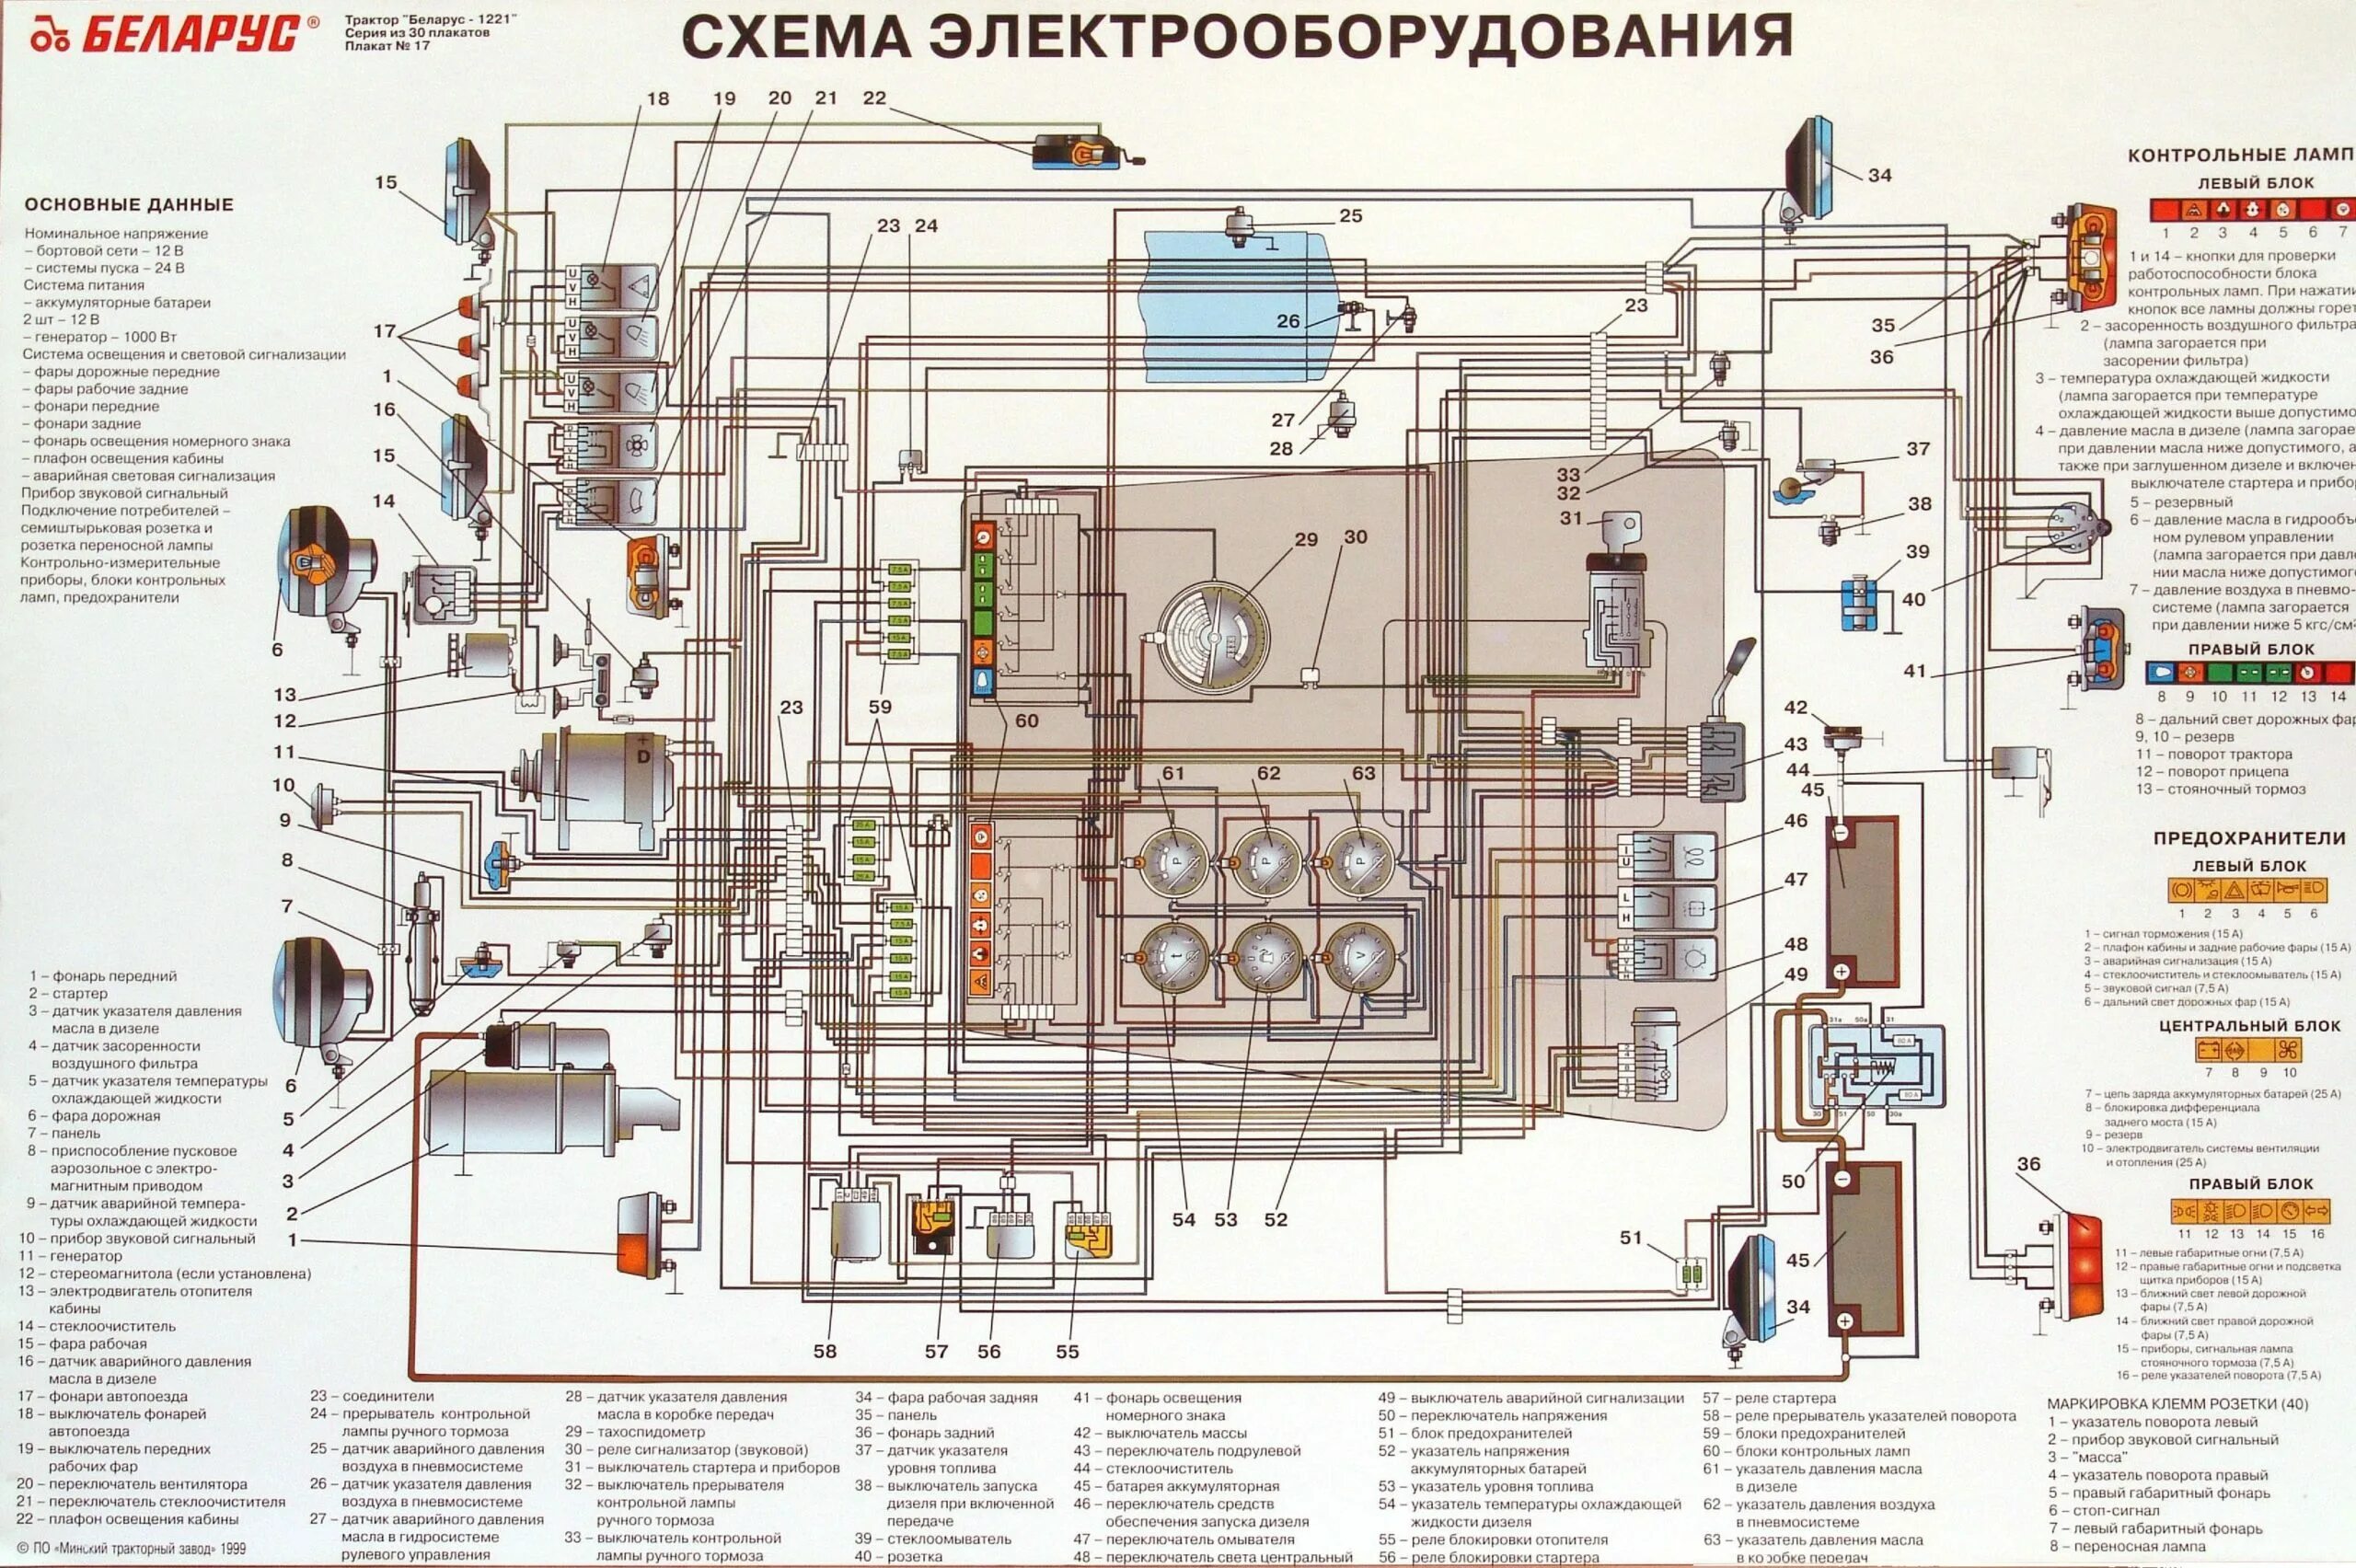 Мтз 82.1 не работает. Схема электрооборудования трактора МТЗ 82 1. Электрическая схема трактора Беларус 1221 цветная. Схема электропроводки МТЗ 82.1 цветная с описанием. МТЗ 82 2005 года электрическая схема.